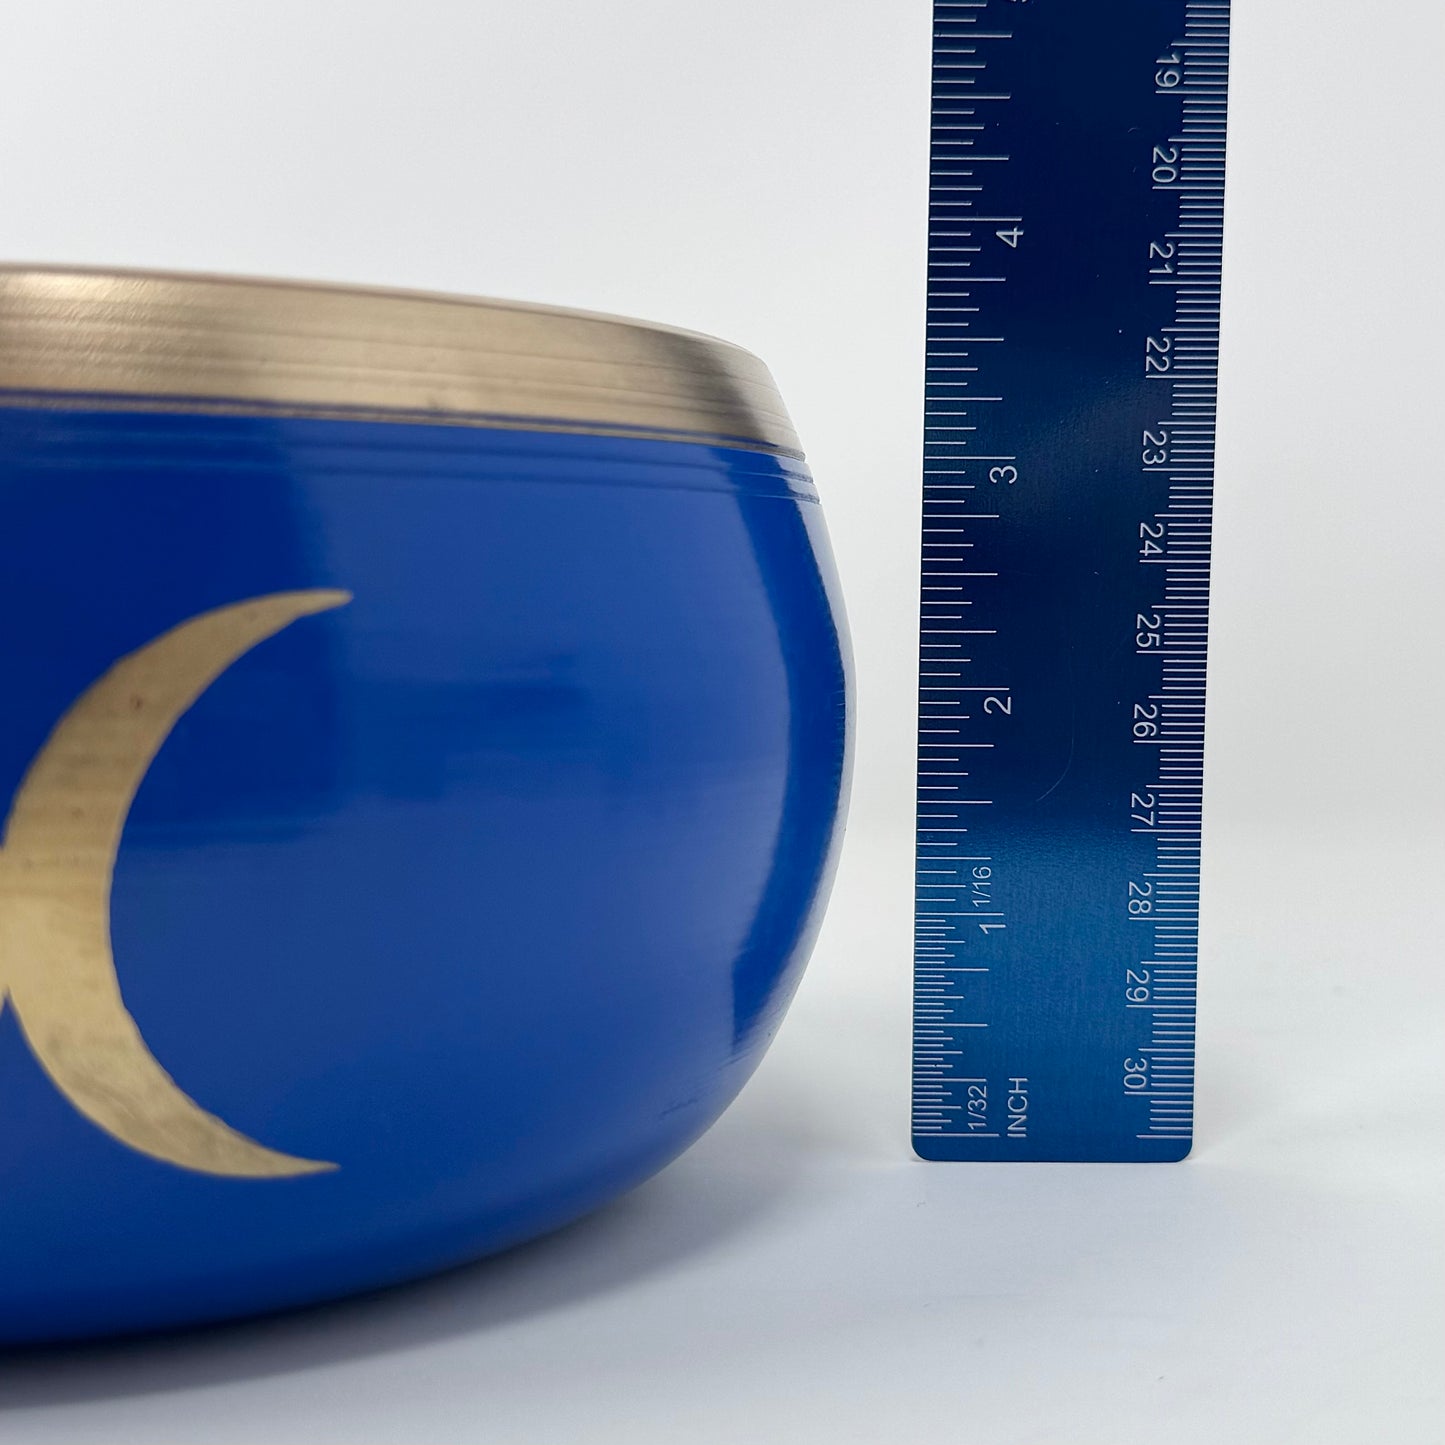 6” Diameter Blue Singing Bowl